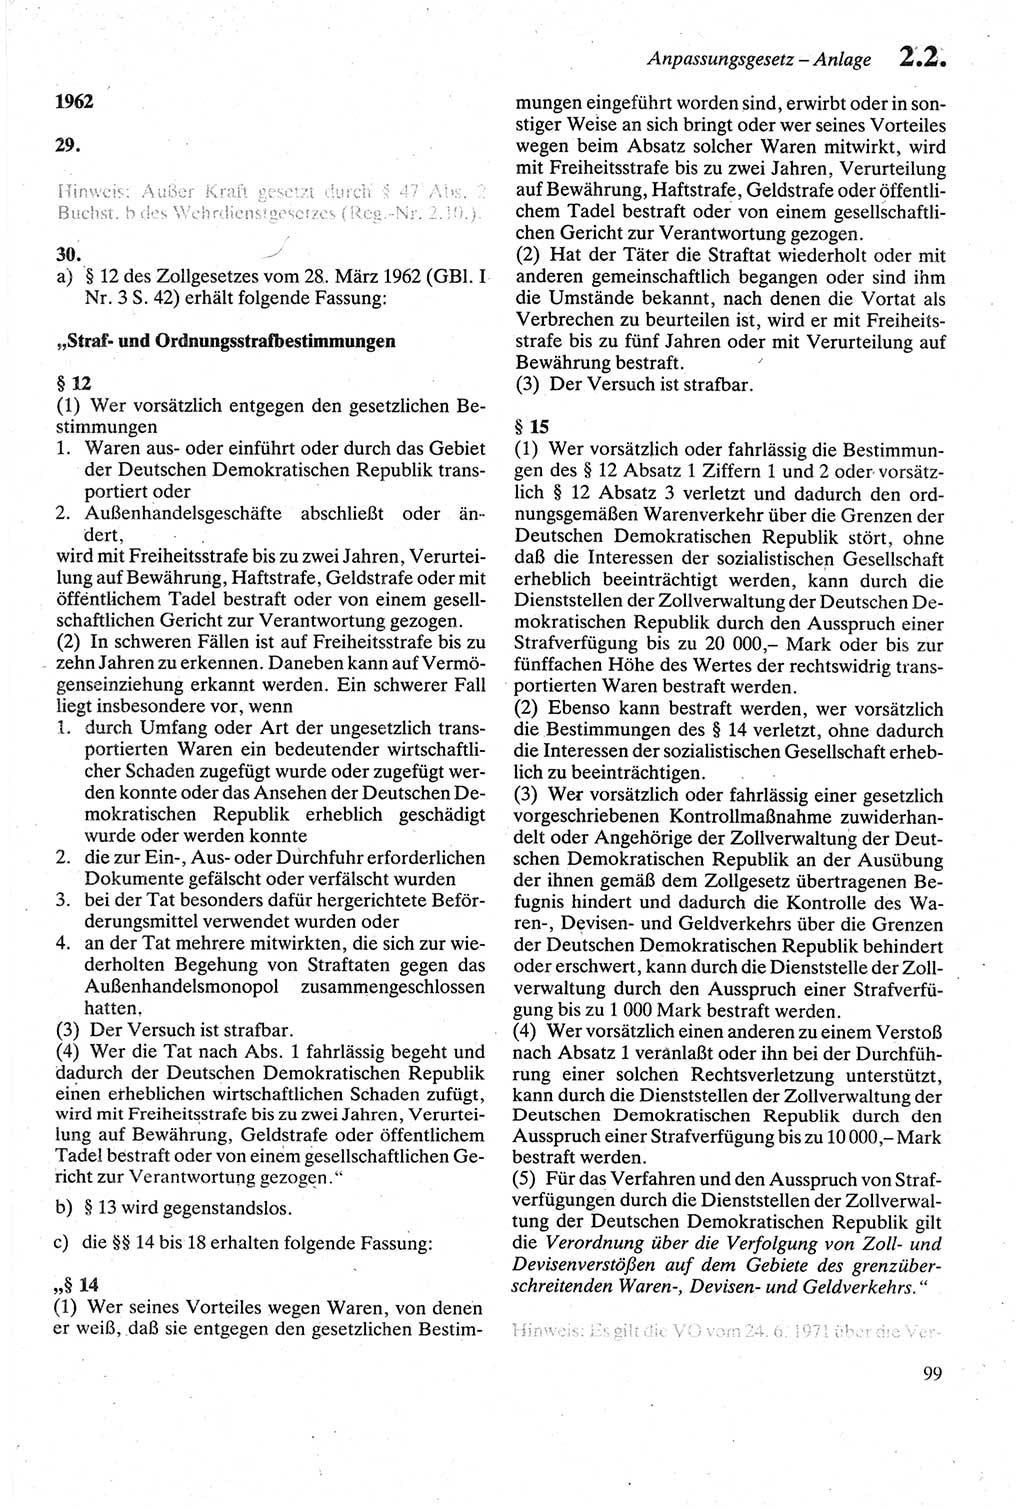 Strafgesetzbuch (StGB) der Deutschen Demokratischen Republik (DDR) sowie angrenzende Gesetze und Bestimmungen 1979, Seite 99 (StGB DDR Ges. Best. 1979, S. 99)